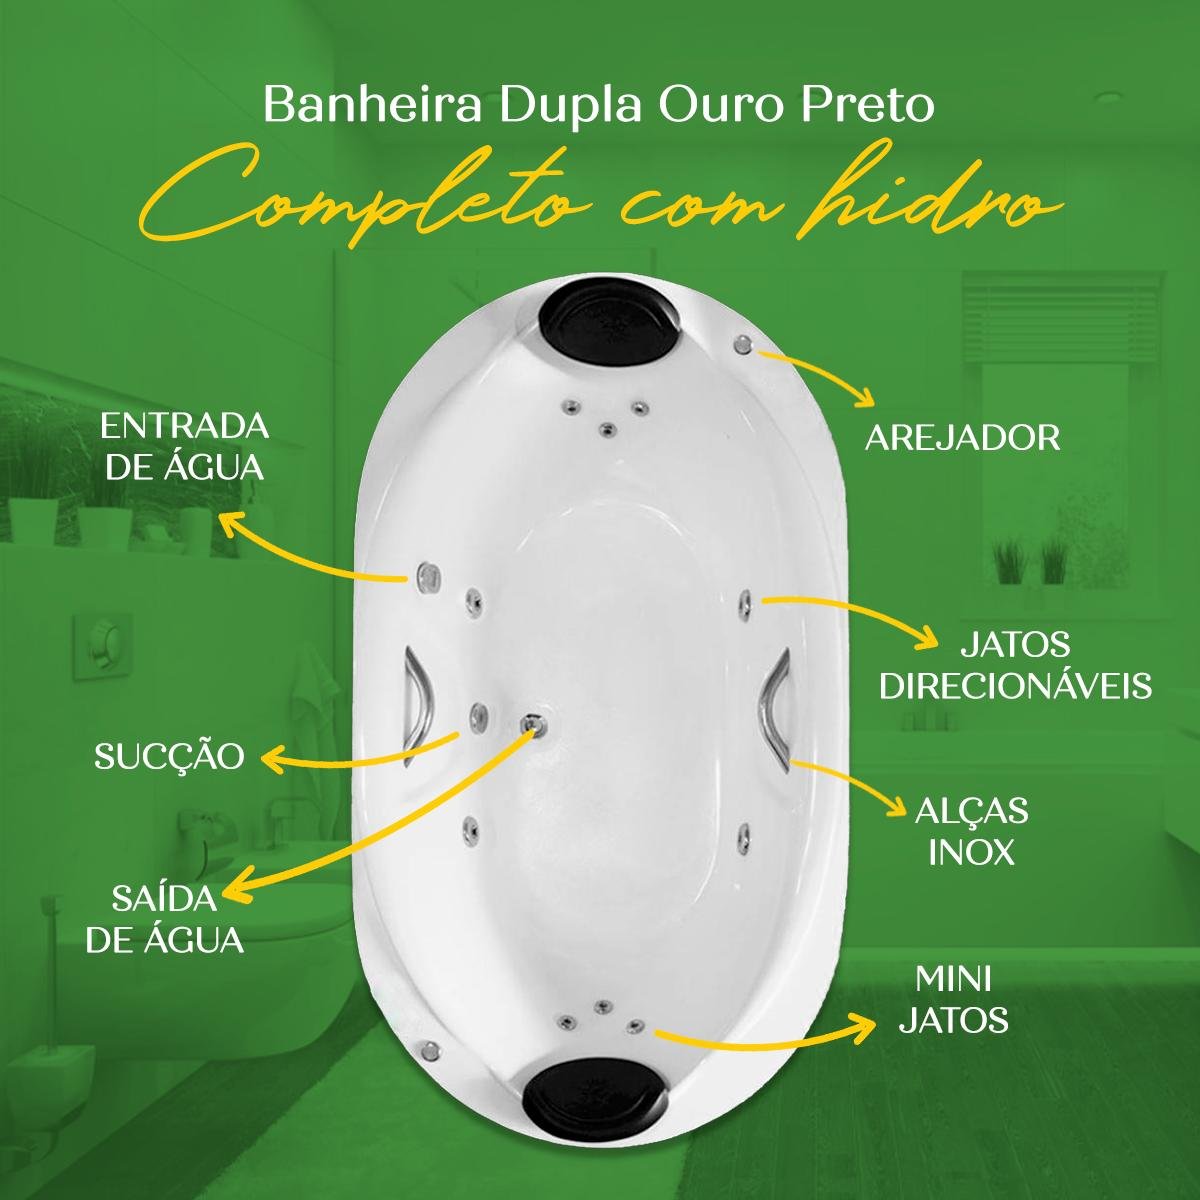 Banheira Dupla Ouro Preto Completa com Hidro em Acrílico - 4